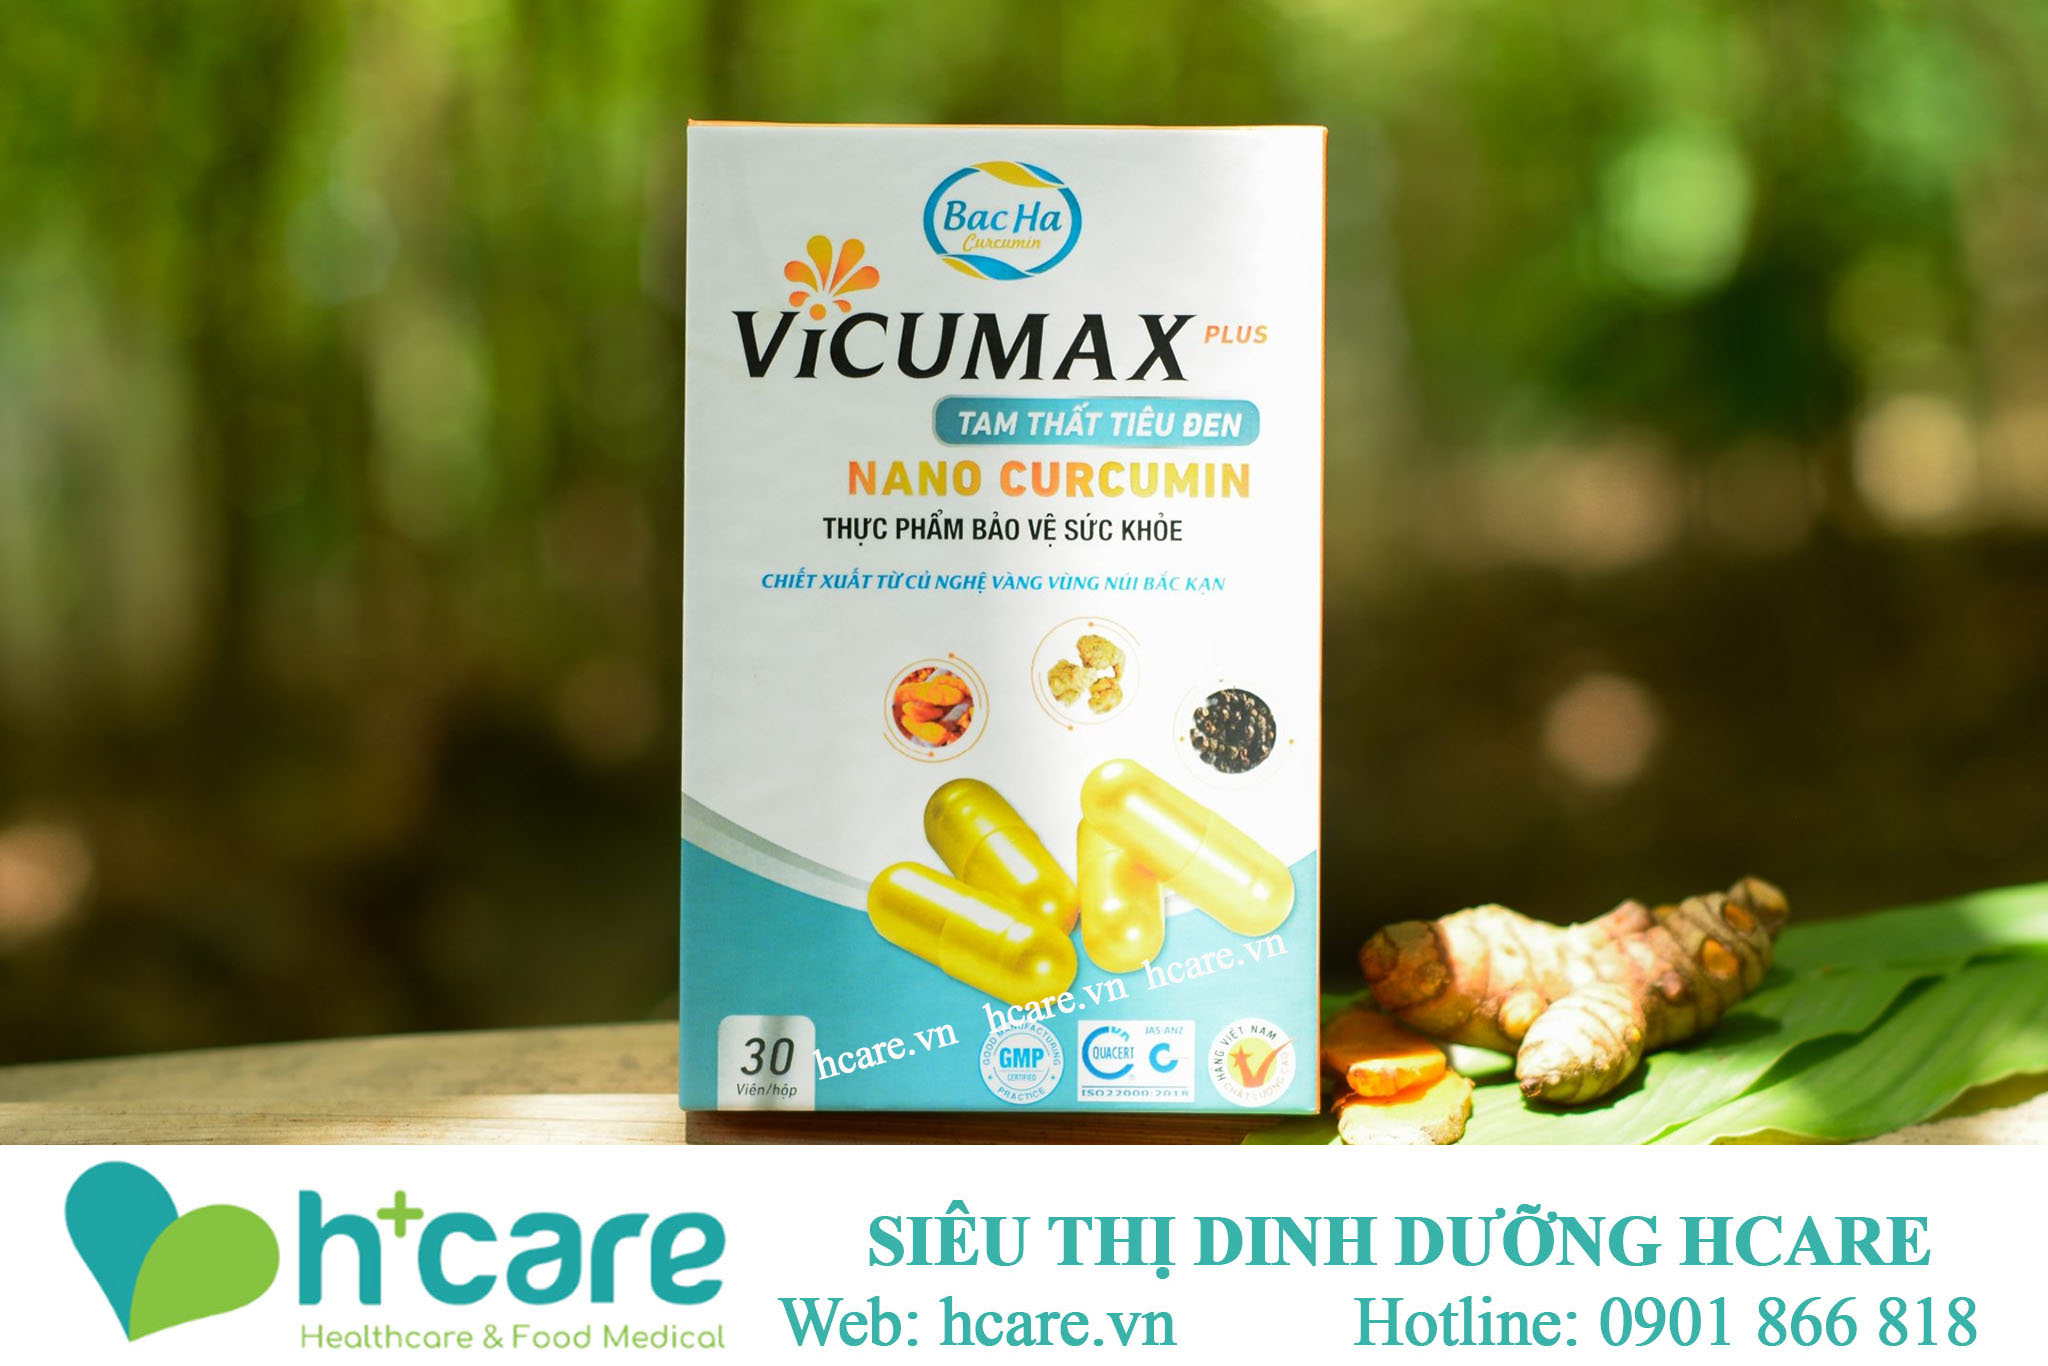 Vicumax Plus nano curcumin- tam thất tiêu đen hộp 30 viên